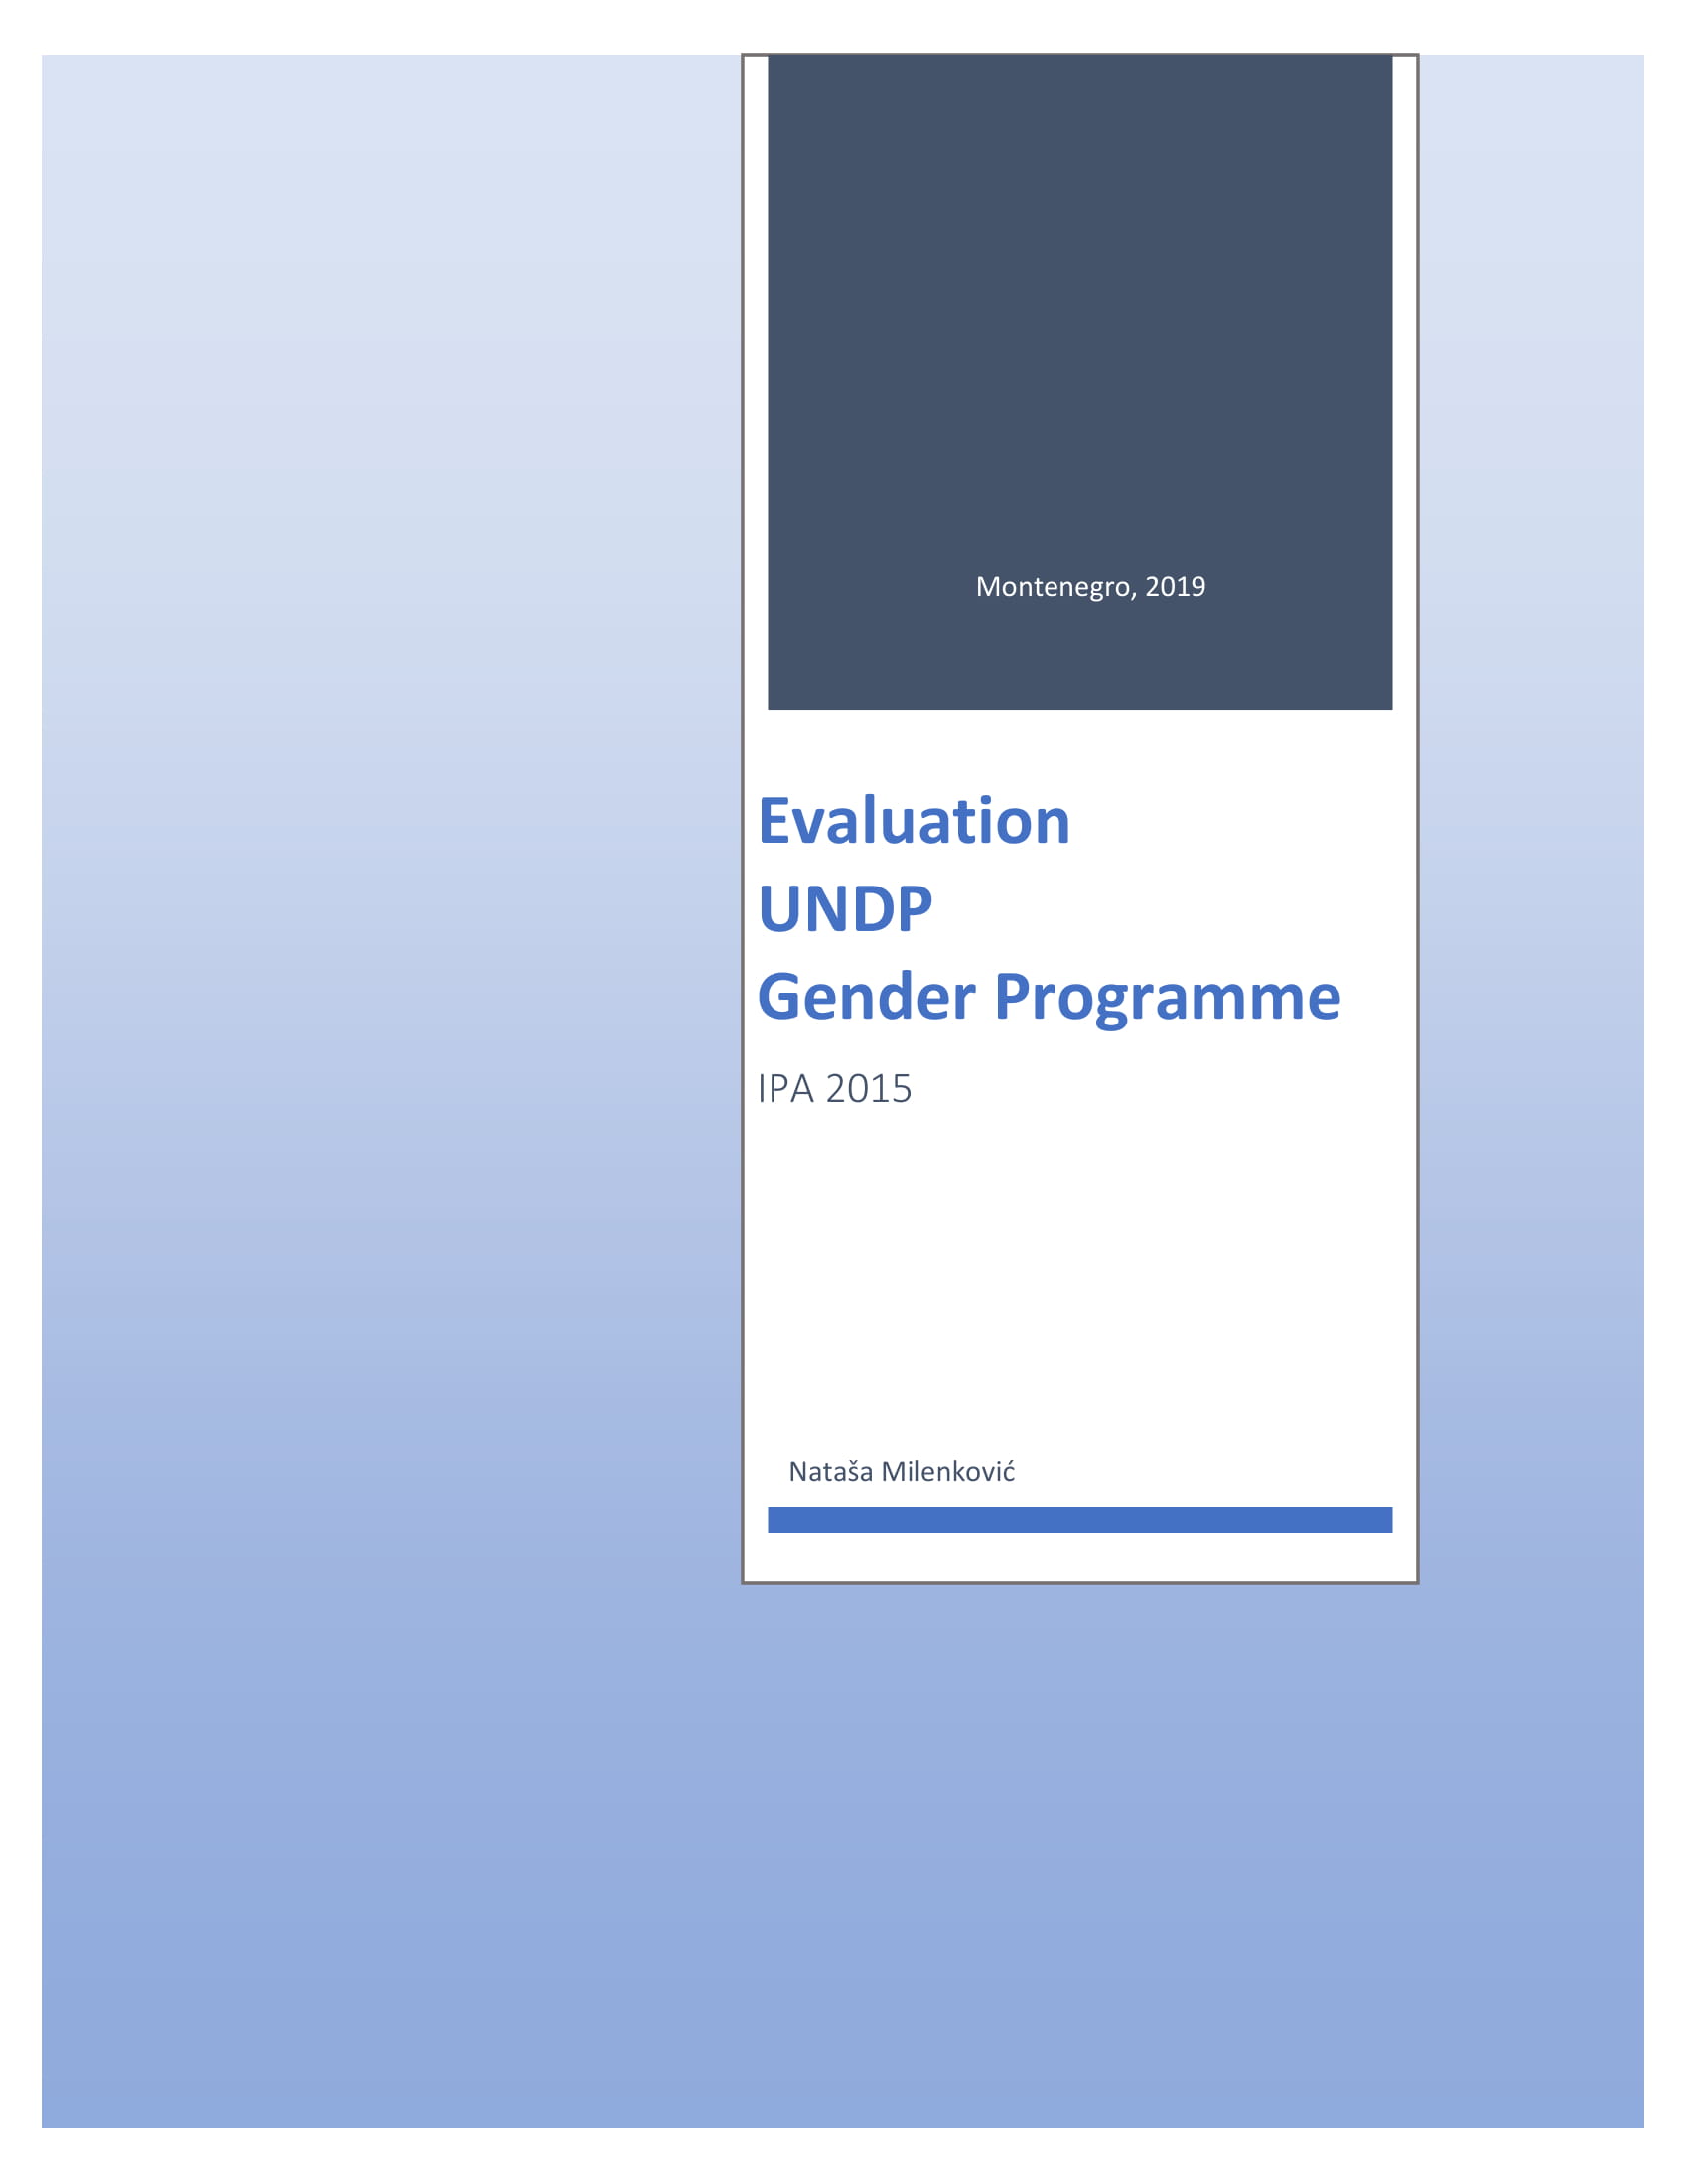 Gender programme evaluation